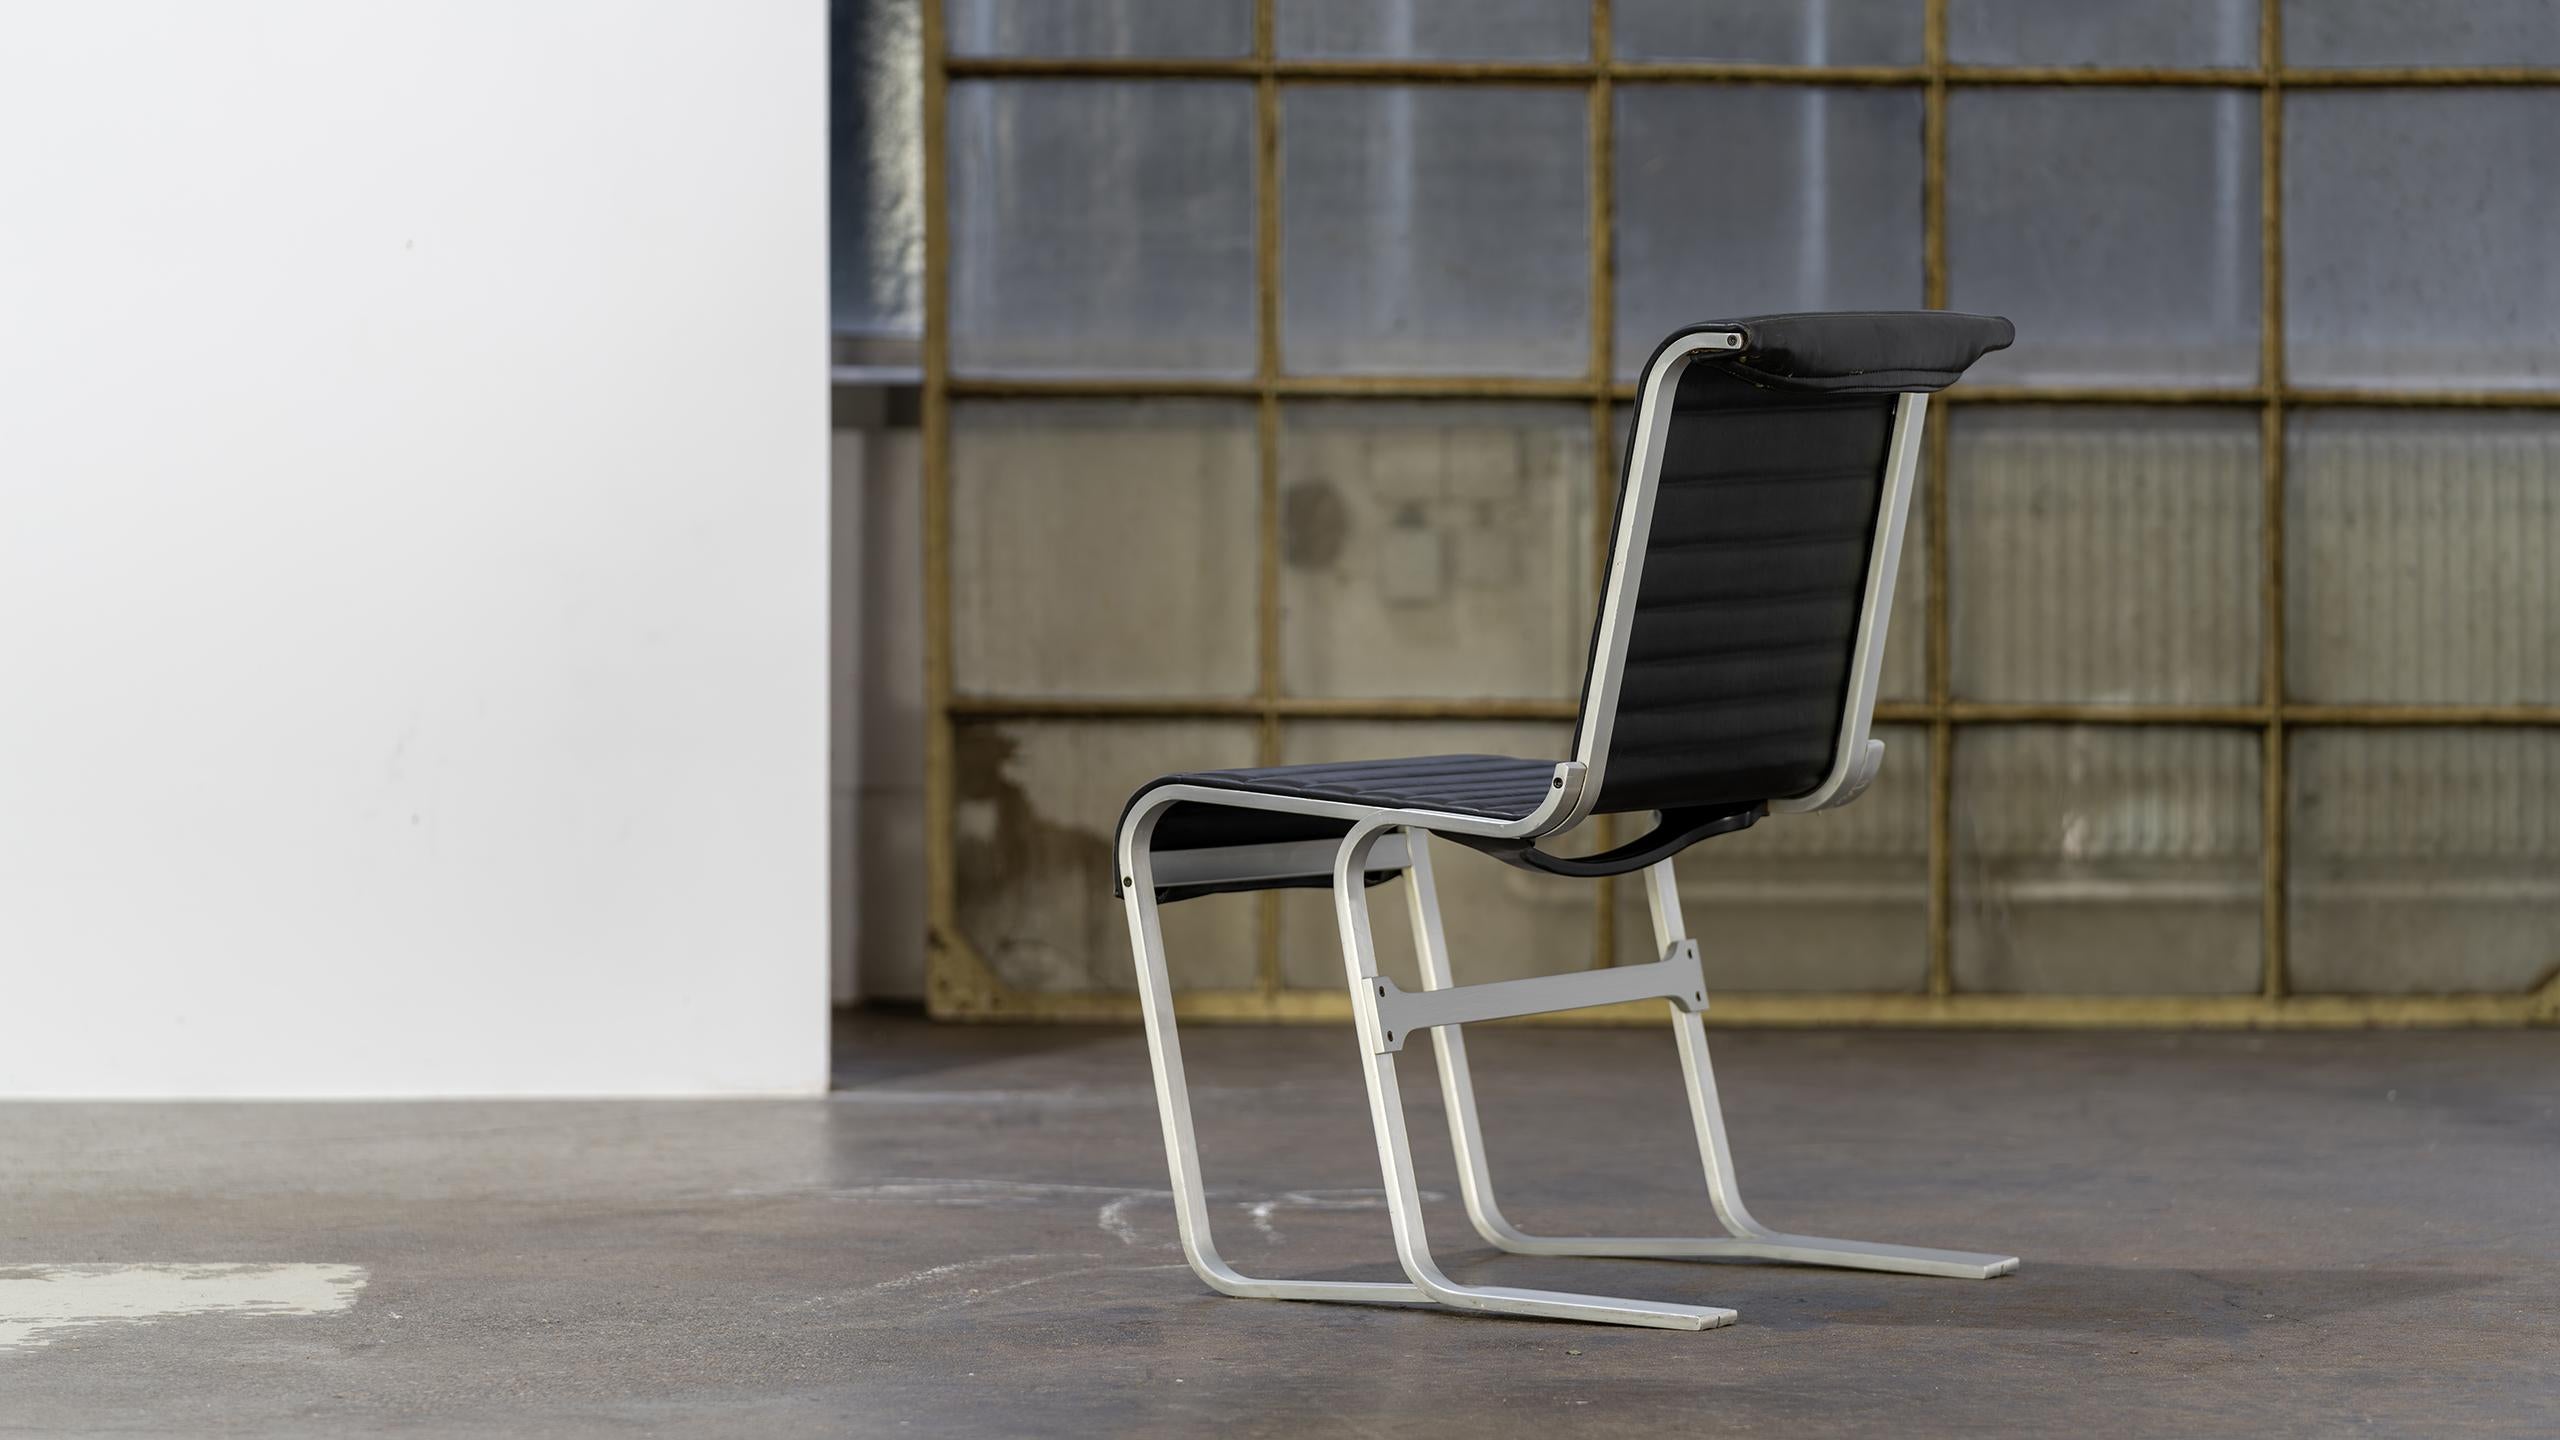 Marcel Breuer - Chaise en aluminium 1933, fabriquée par ICF Cadsana, Italie - MoMa

L'architecte d'origine allemande Marcel Breuer (1902-1981) est l'un des plus importants designers du XXe siècle. Élève puis professeur au Bauhaus, Breuer a conçu les